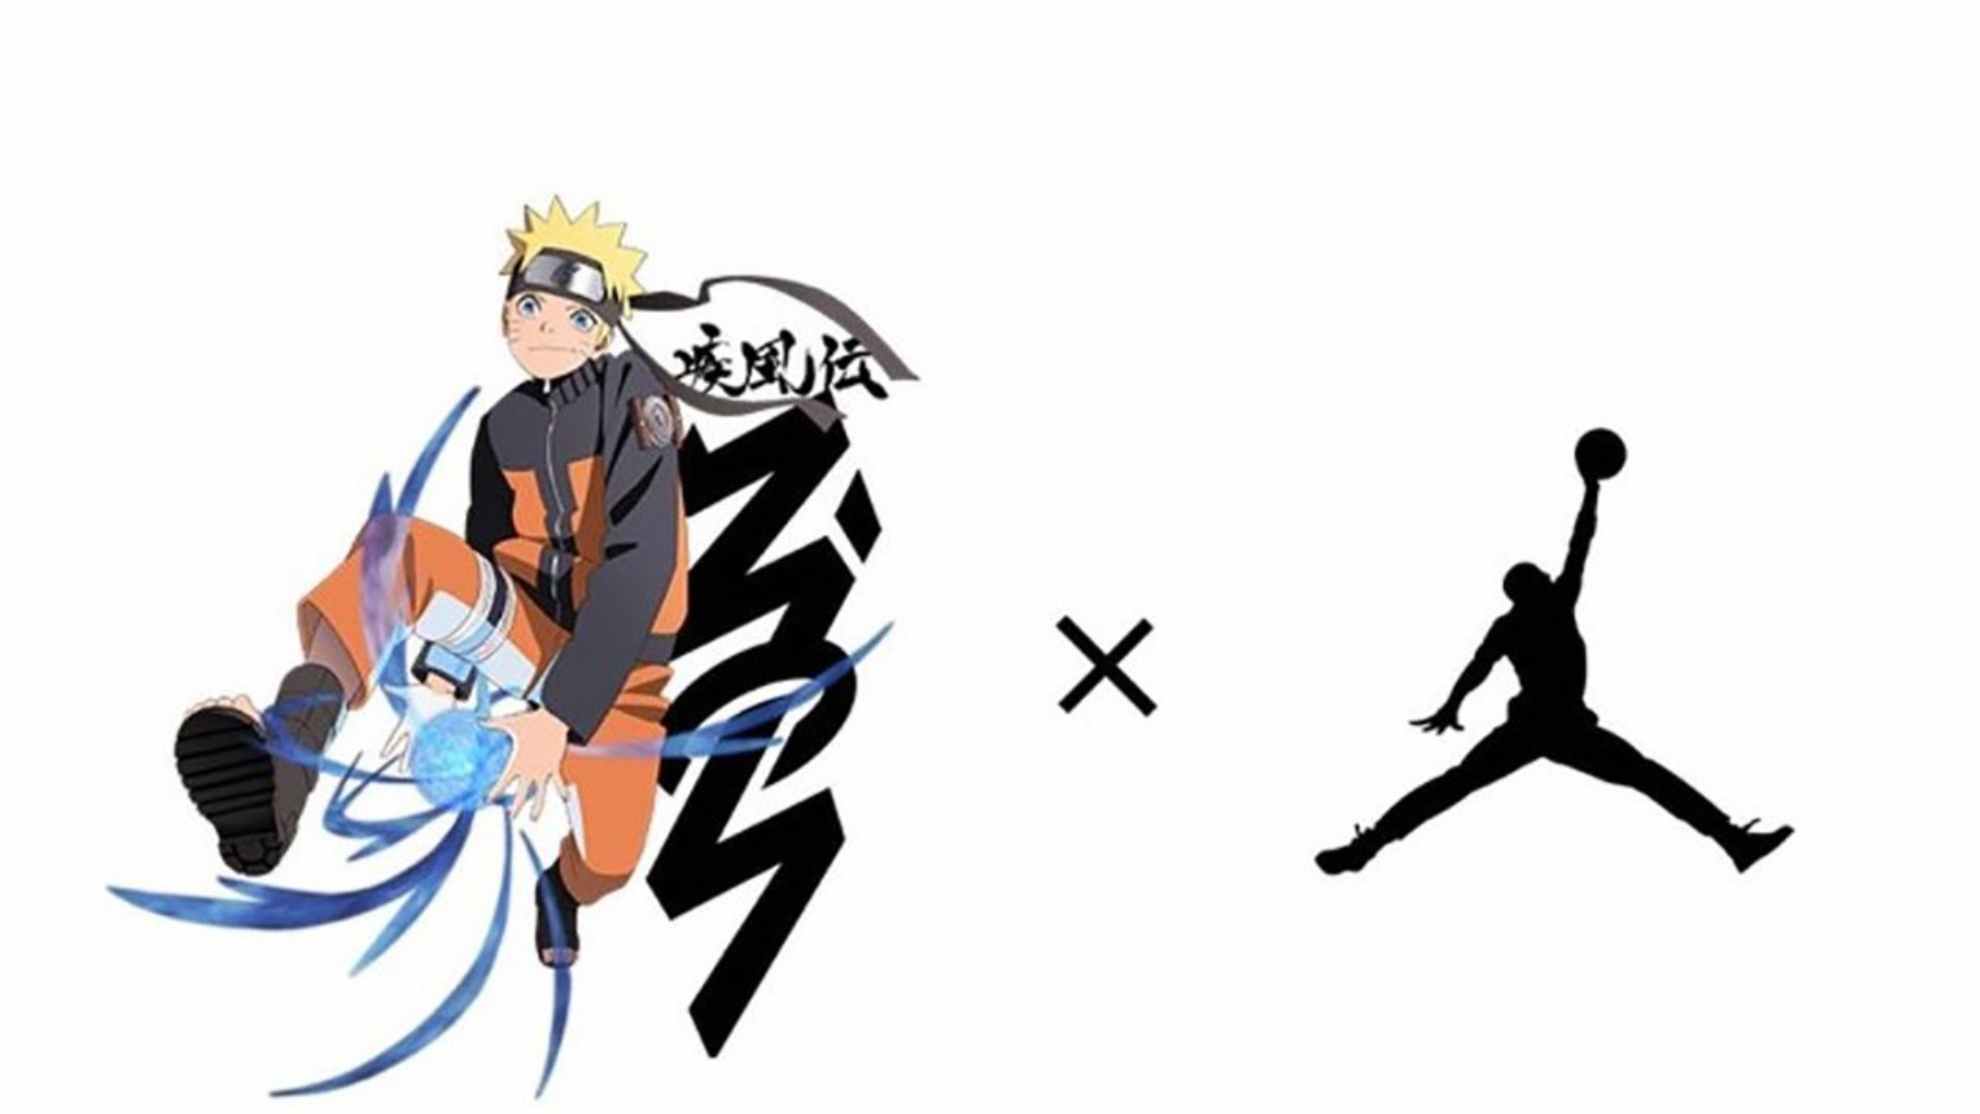 Naruto and the Jumpman